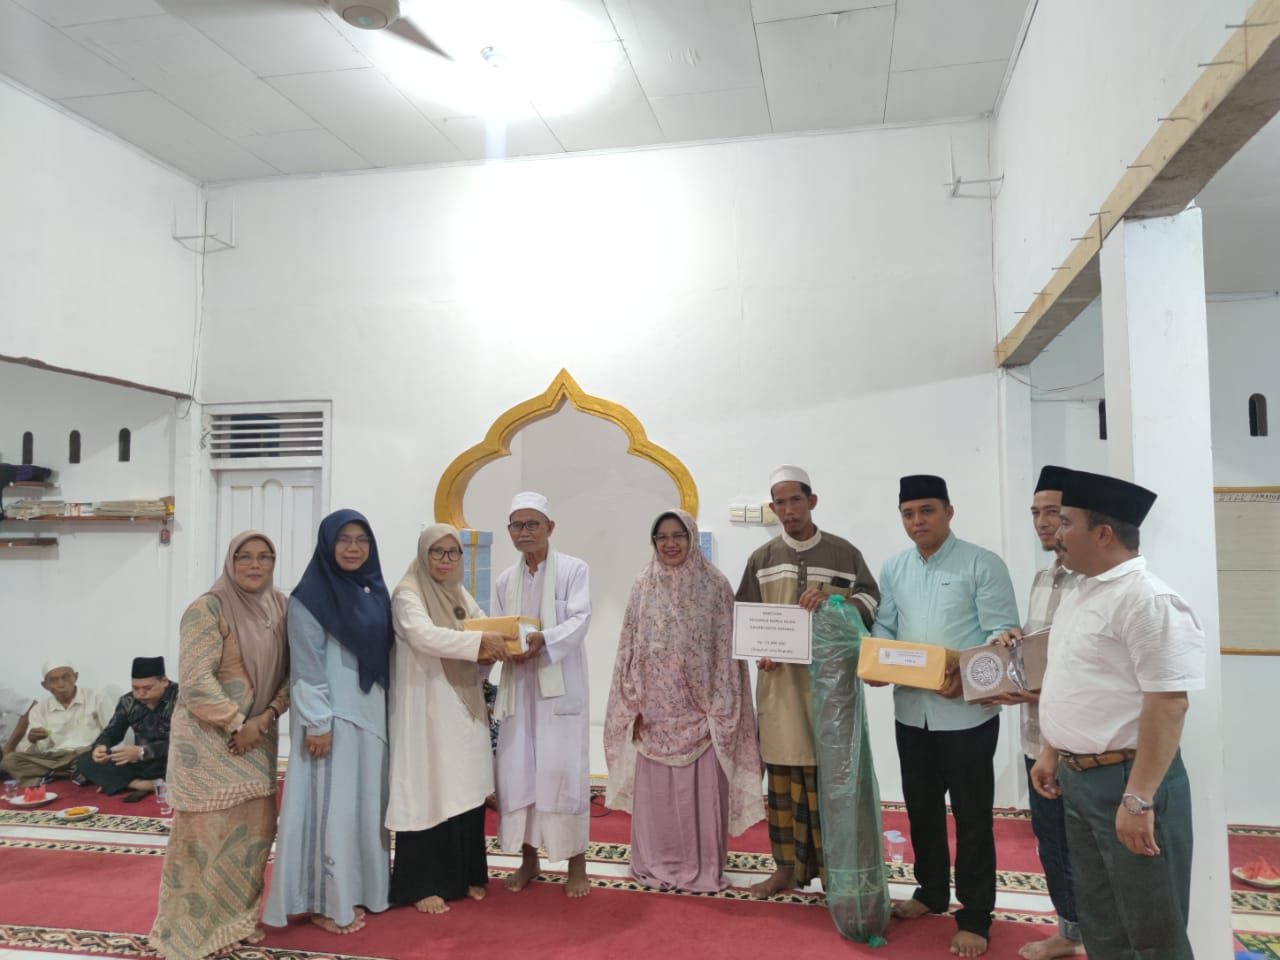 Kunjungan Kedua Tim V Safari Ramadhan ke Masjid Nurul Huda, Pemerintah Daerah Menyampaikan Informasi Program Pembangunan dan Menyediakan Bantuan. (Foto: Dok.Istimewa)